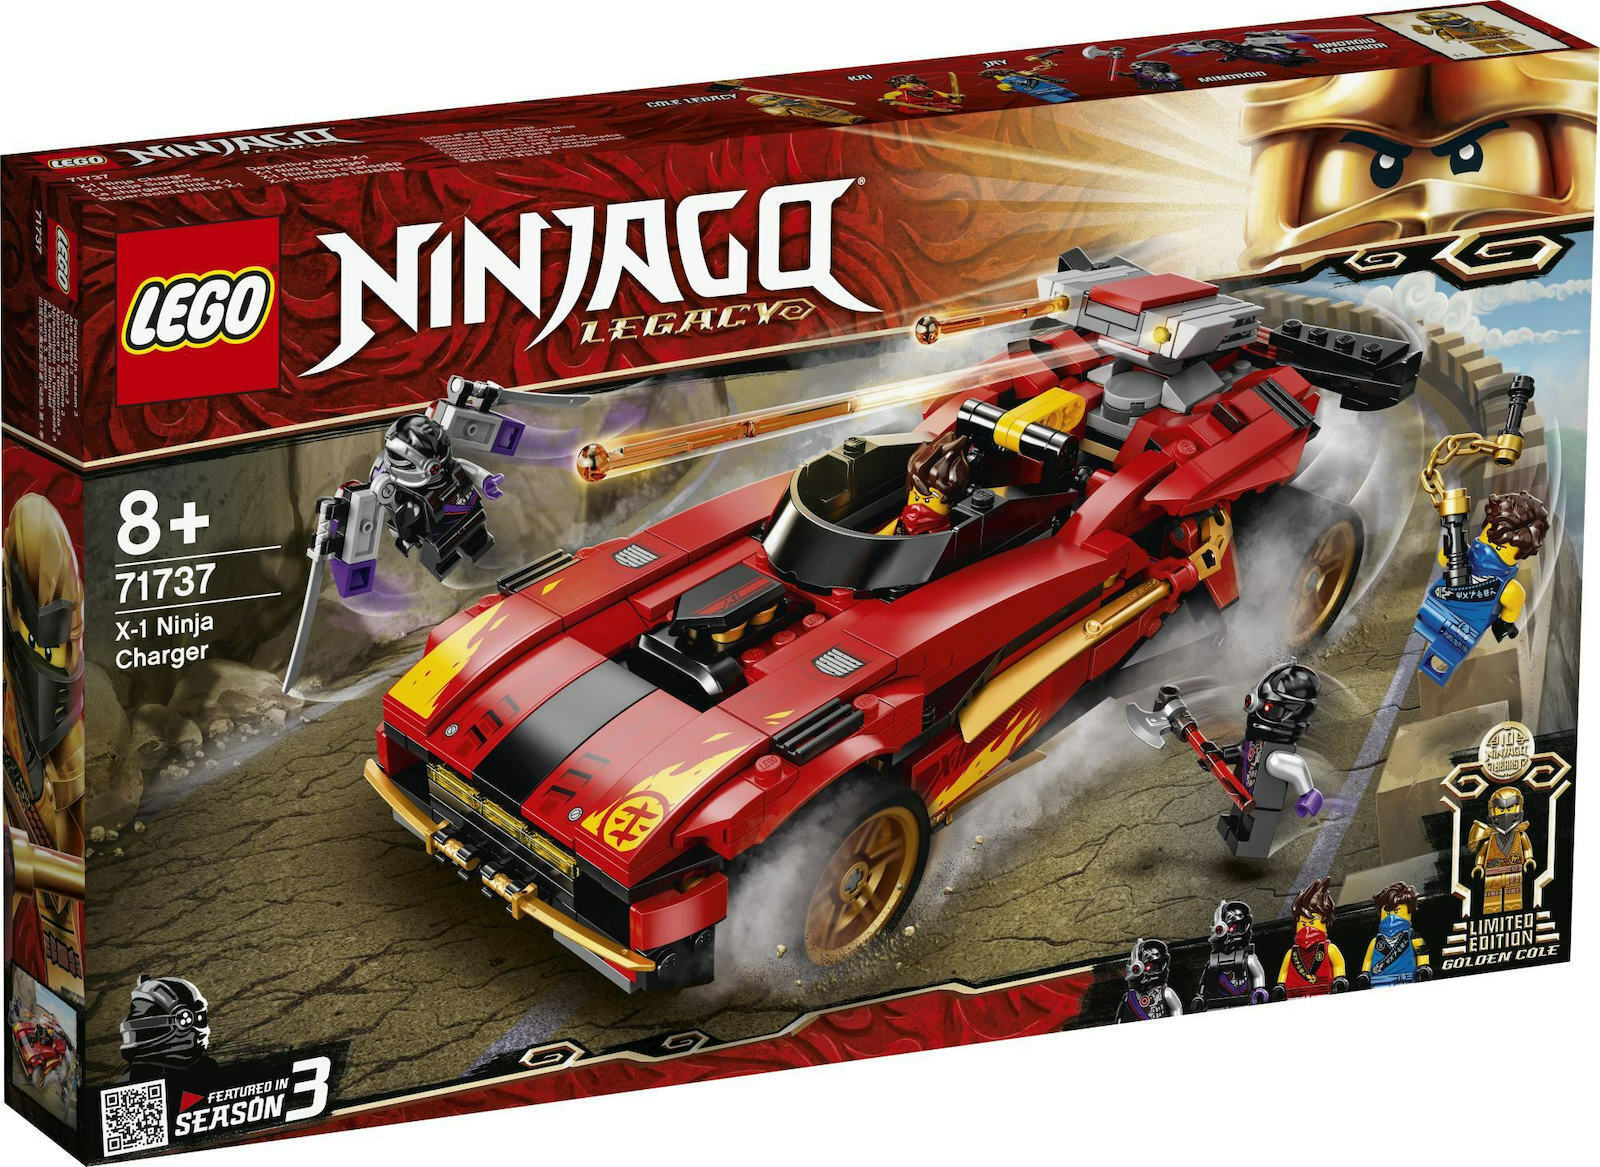 LEGO NINJAGO 71737 X-1 NINJA SUPERCAR